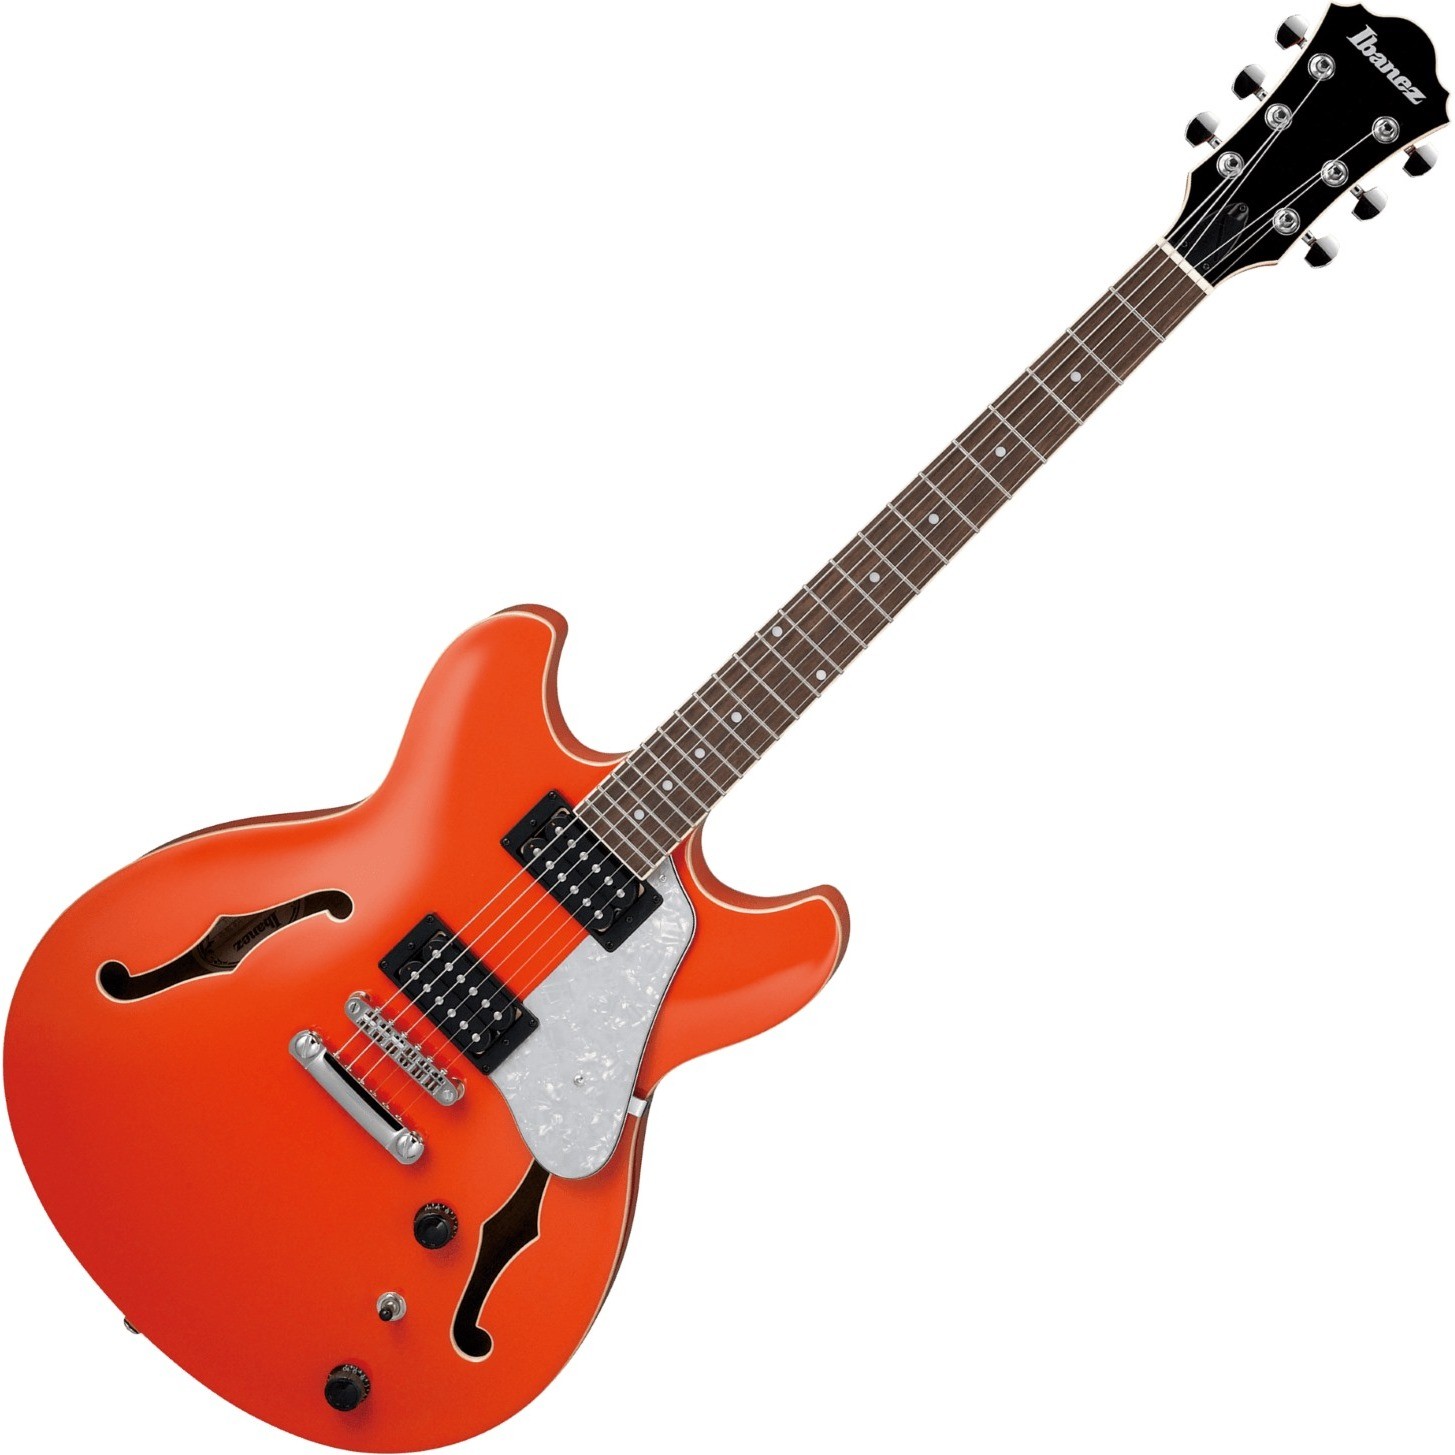 Характеристики электрогитары. Полуакустическая гитара. Ibanez оранжевая педаль. Электрогитара характеристики. Электрогитара купить оранжевую.